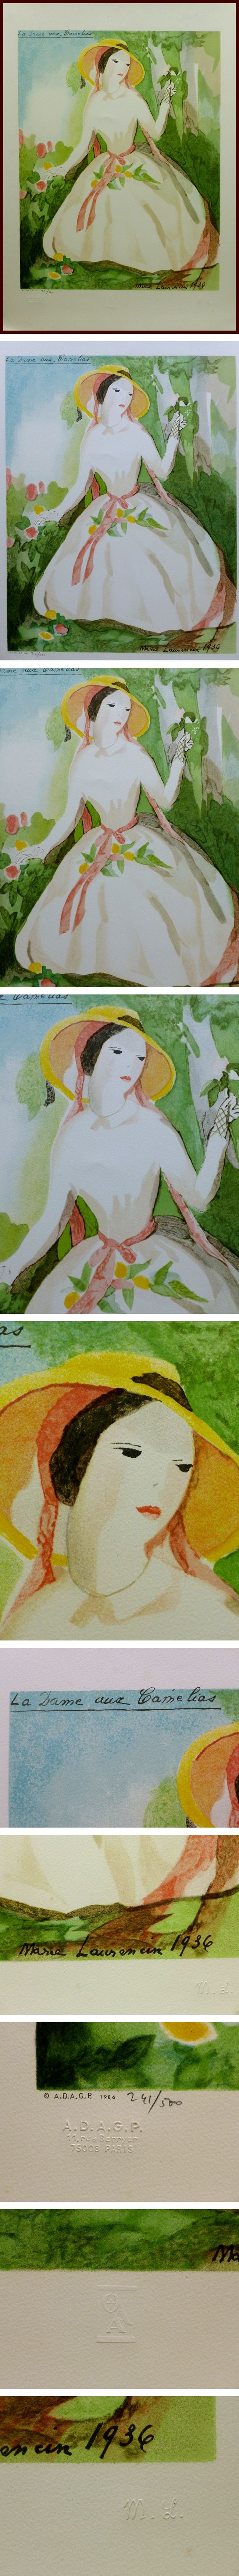 売上安いリトグラフ　ローランサン 「椿姫」 石版画、リトグラフ